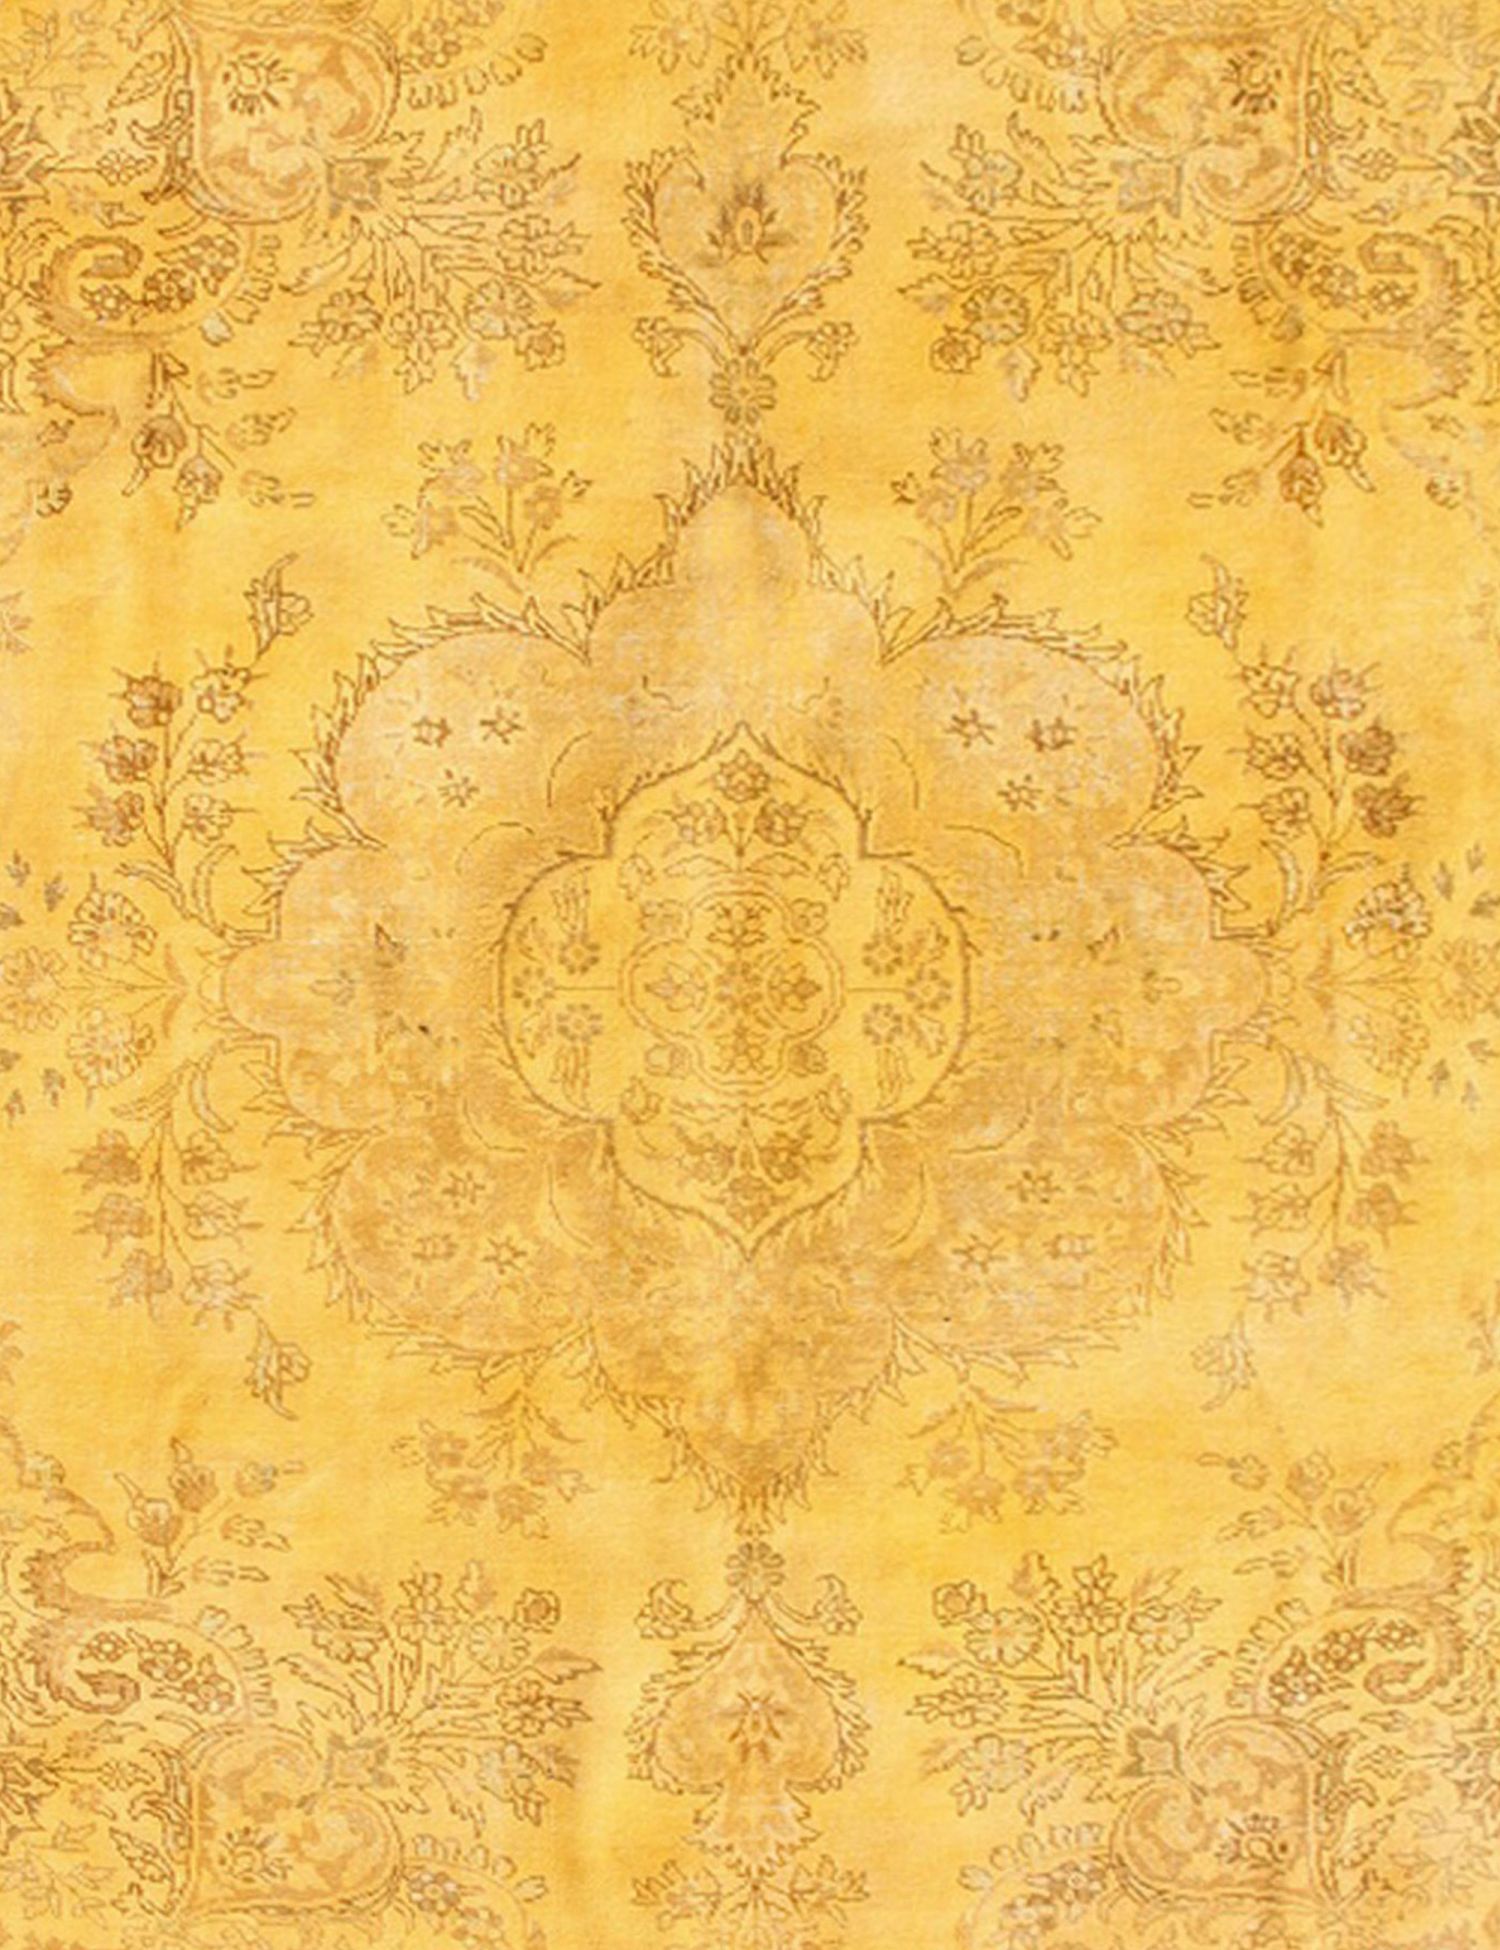 Persischer Vintage Teppich  gelb <br/>395 x 290 cm